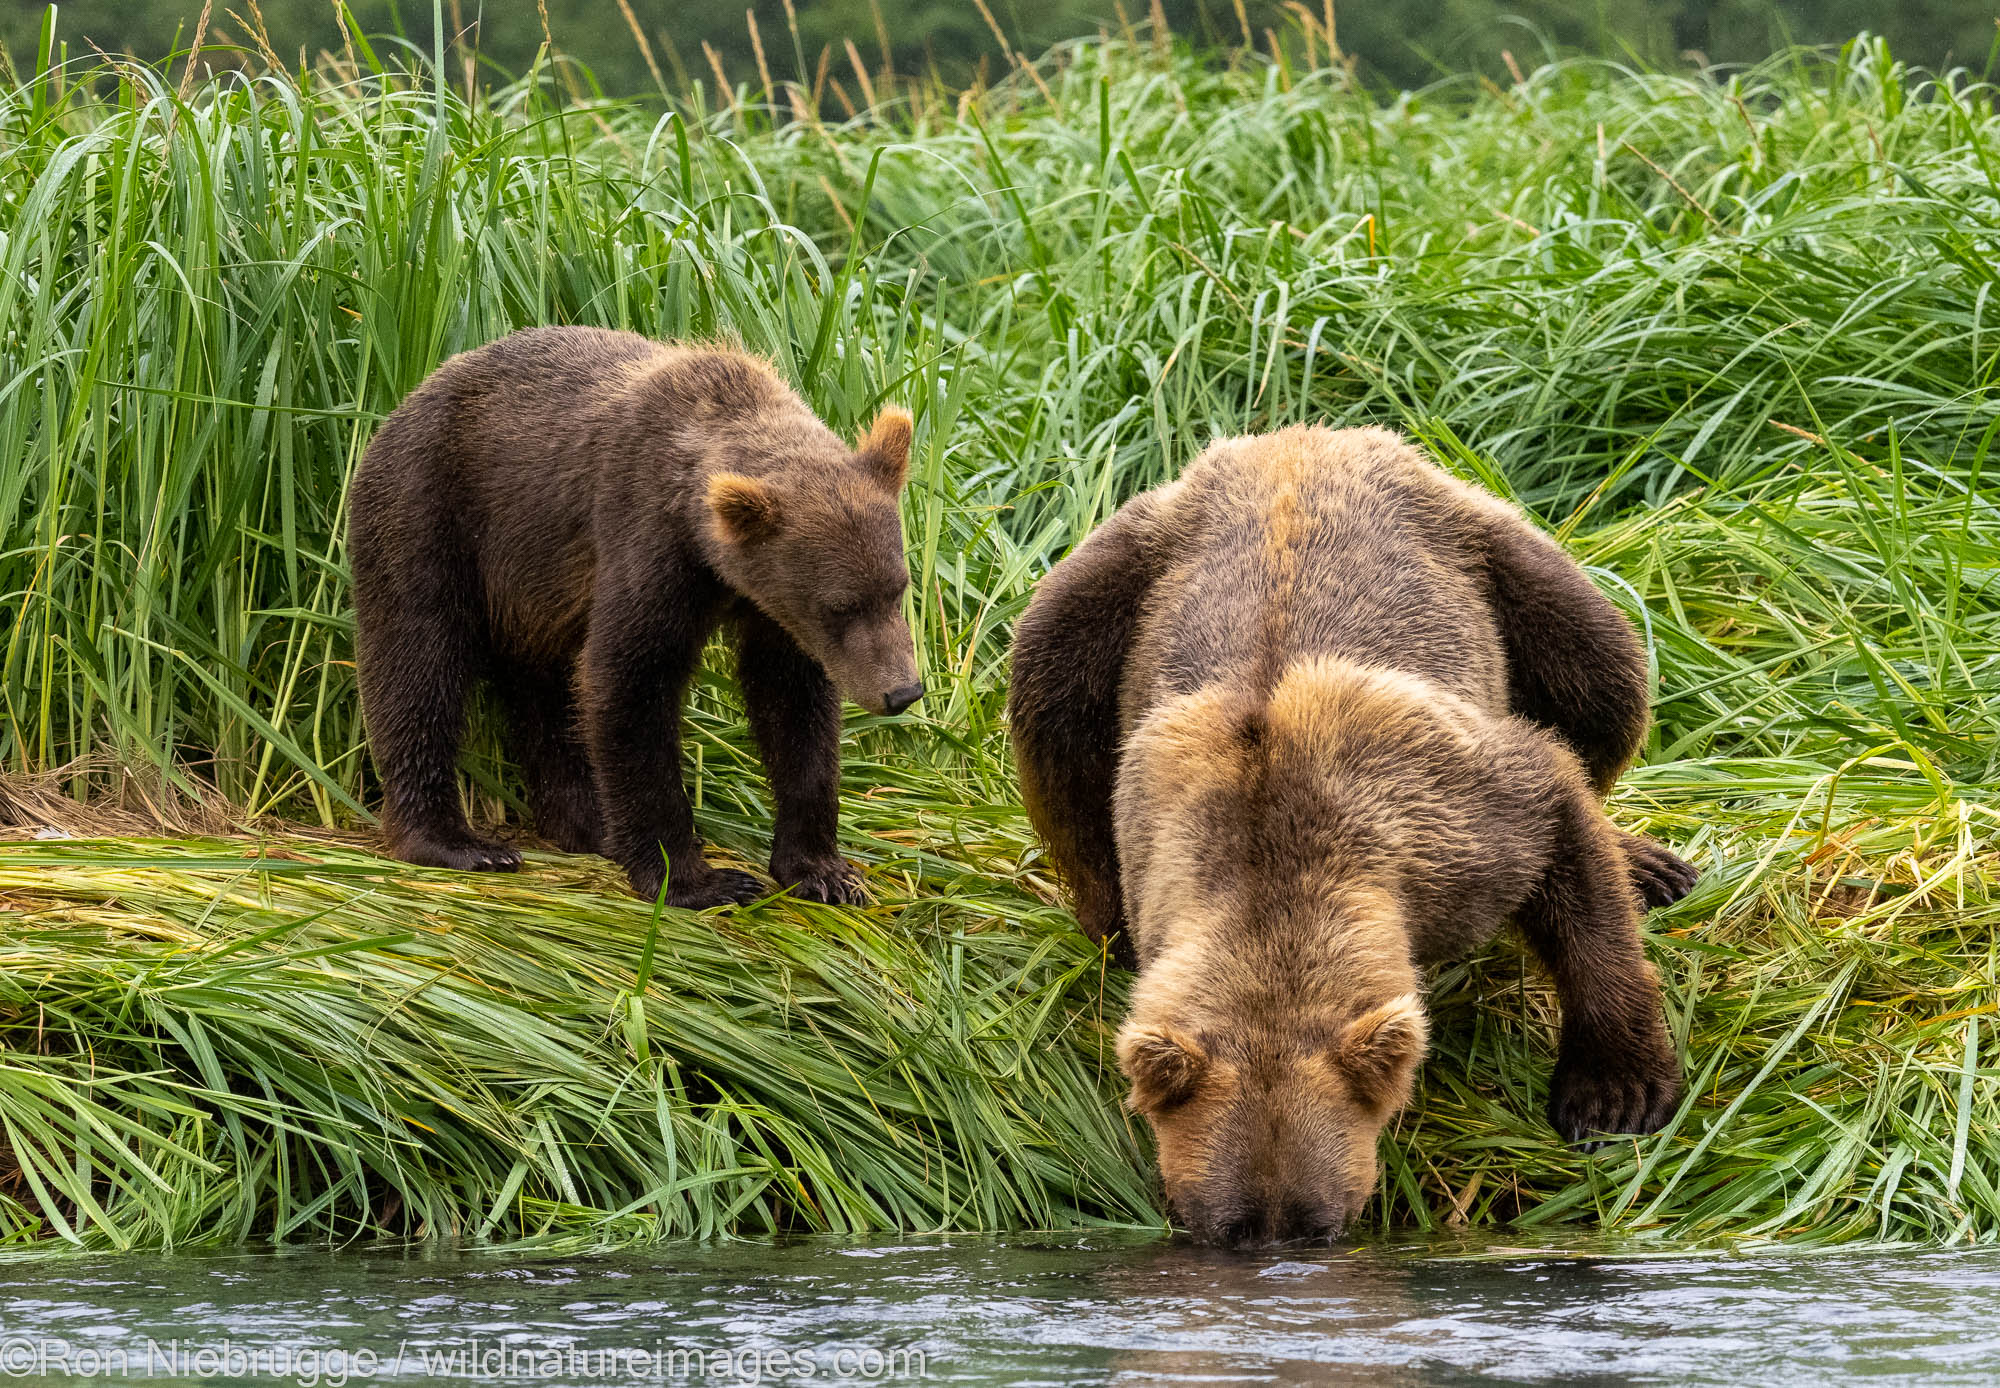 A Brown or Grizzly Bear, Katmai National Park, Alaska.